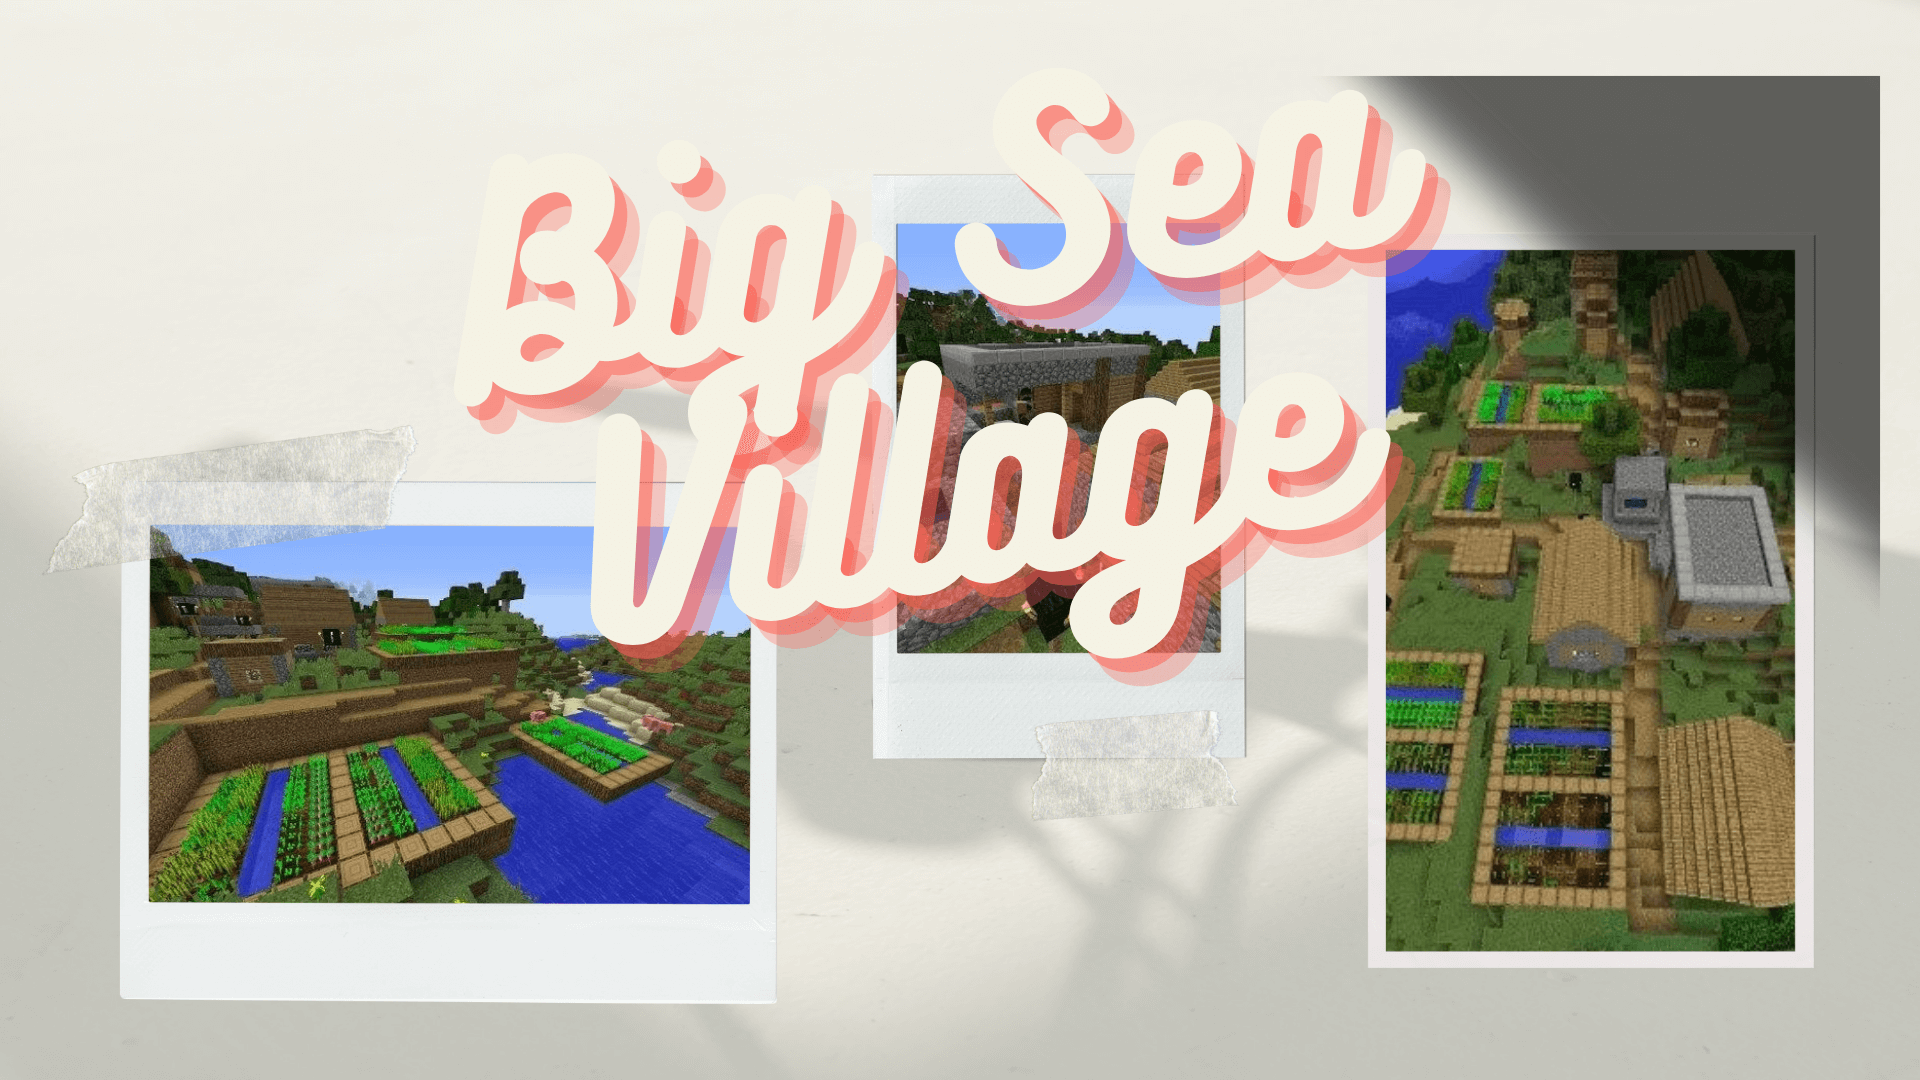 Big Sea Village